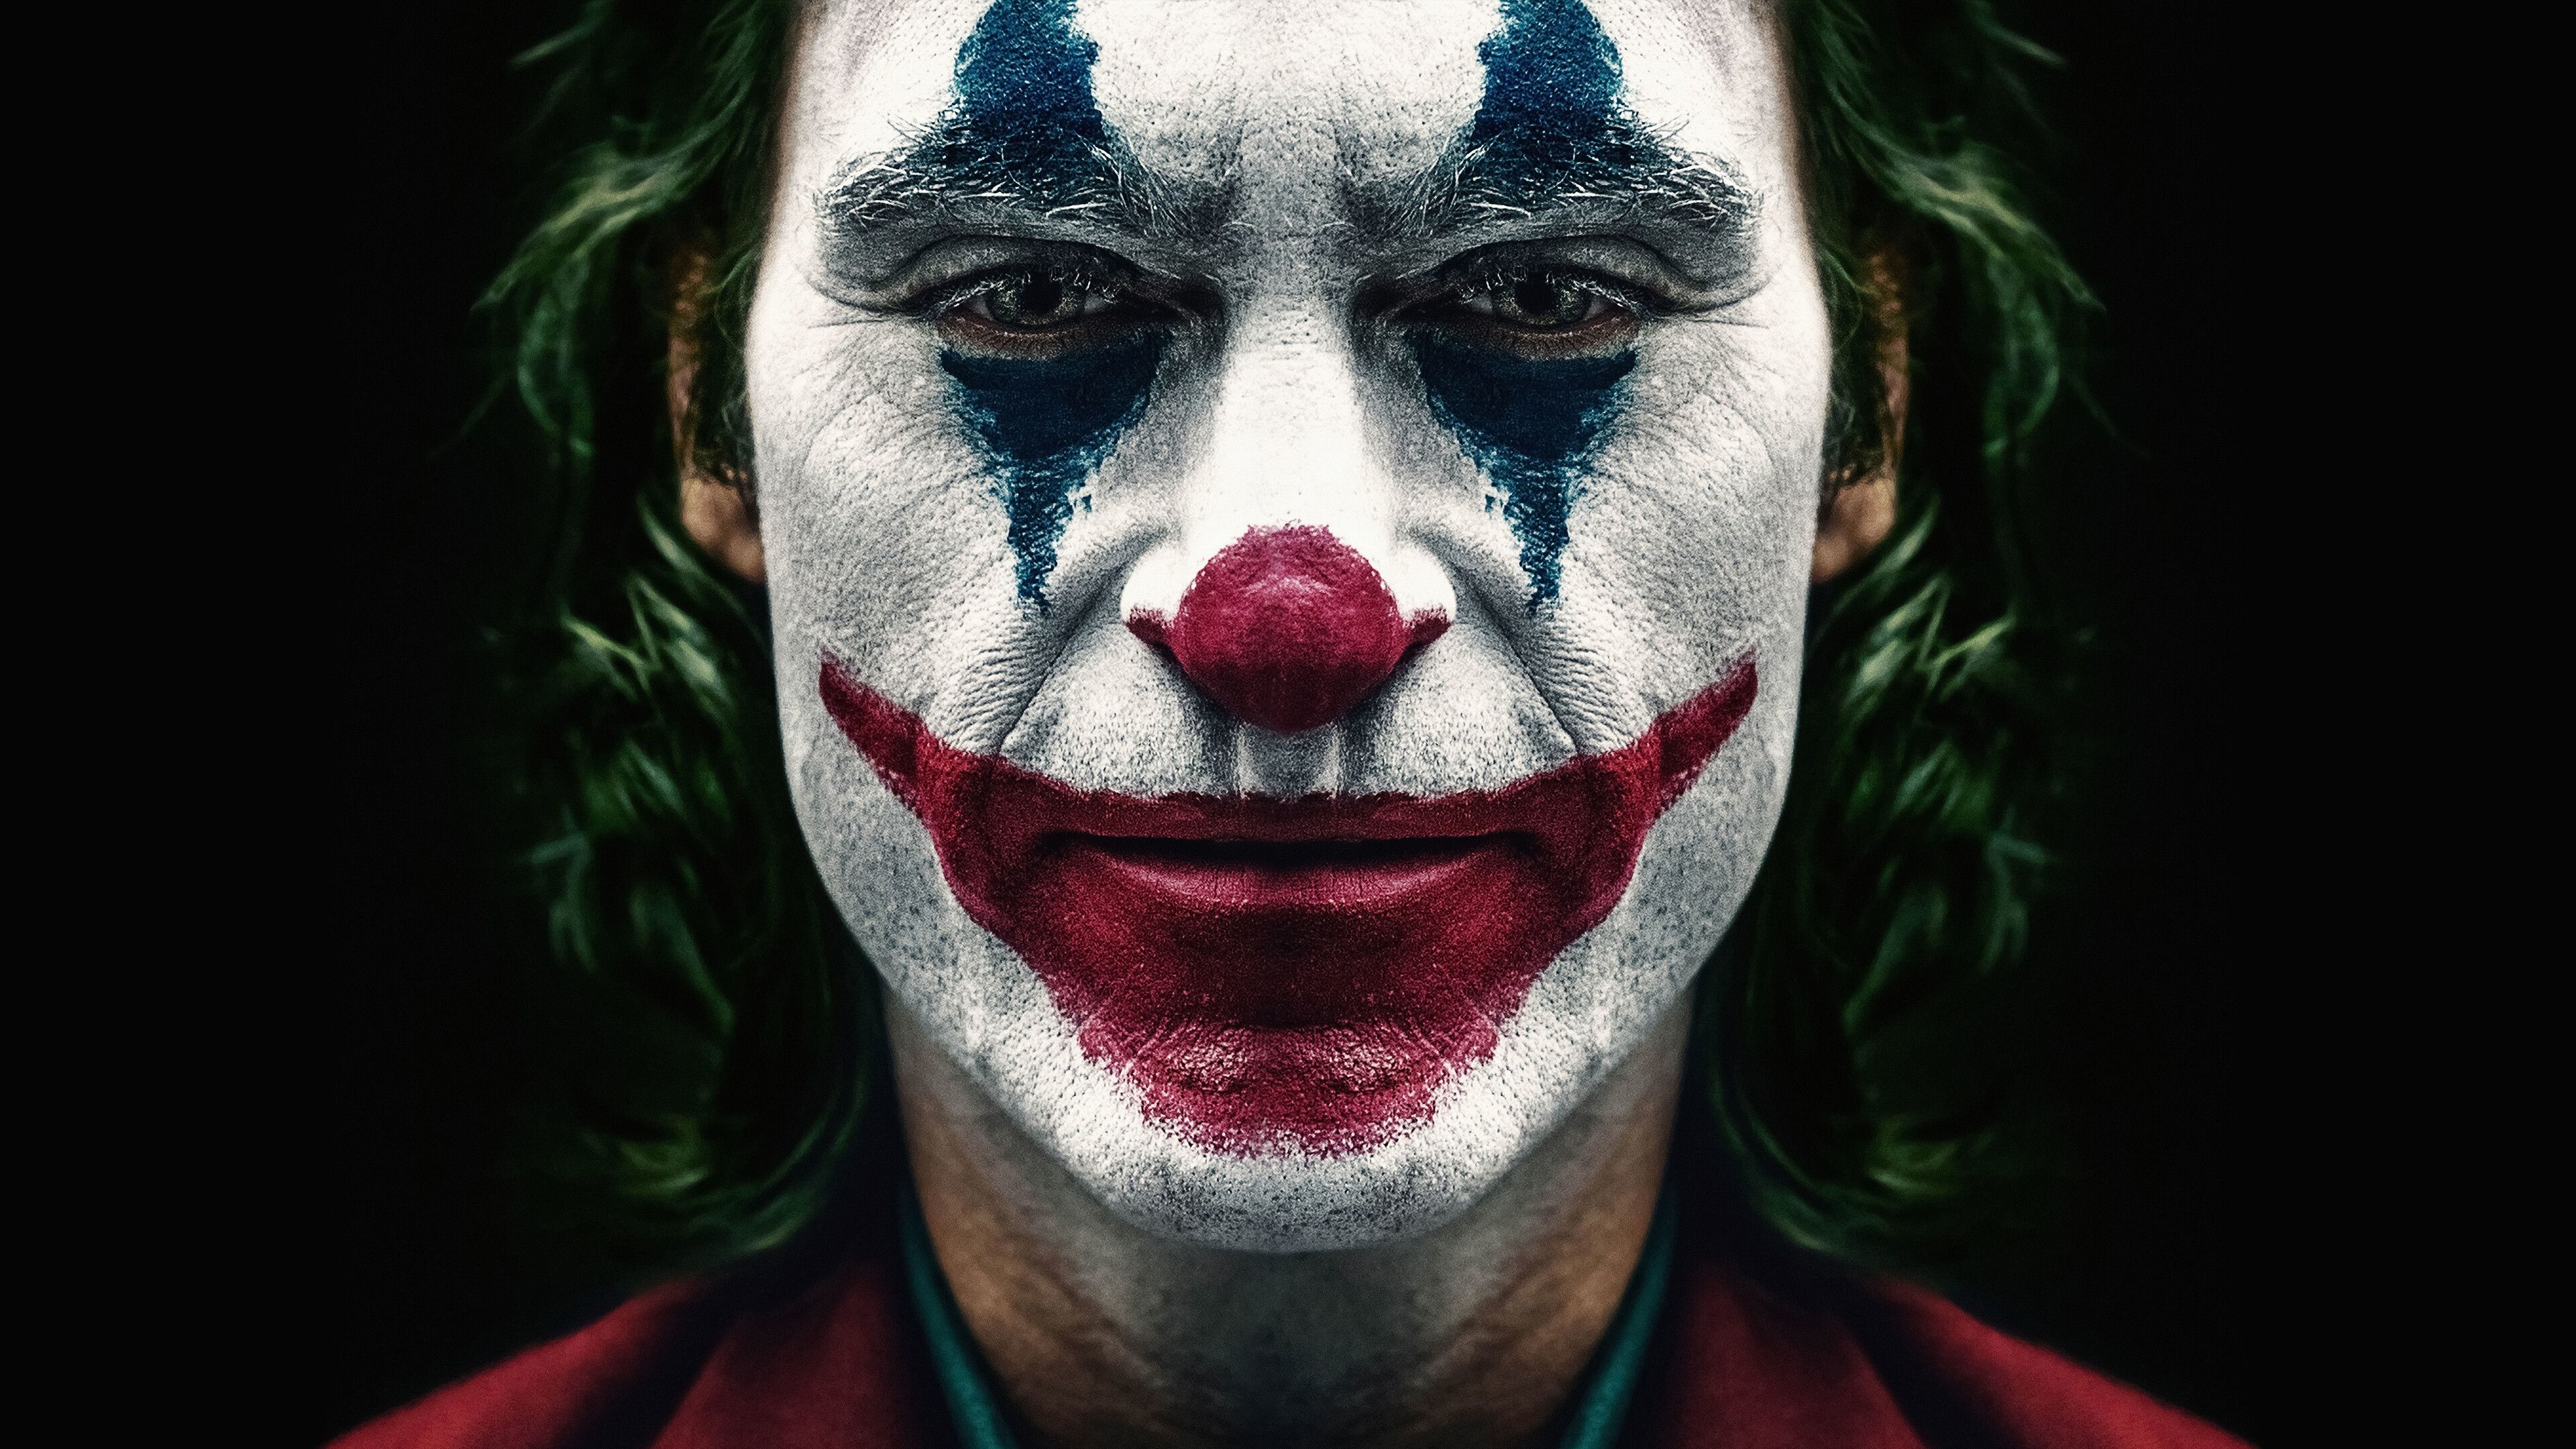 Joker, Joaquin Phoenix, Top free backgrounds, Wallpapers, 3840x2160 4K Desktop